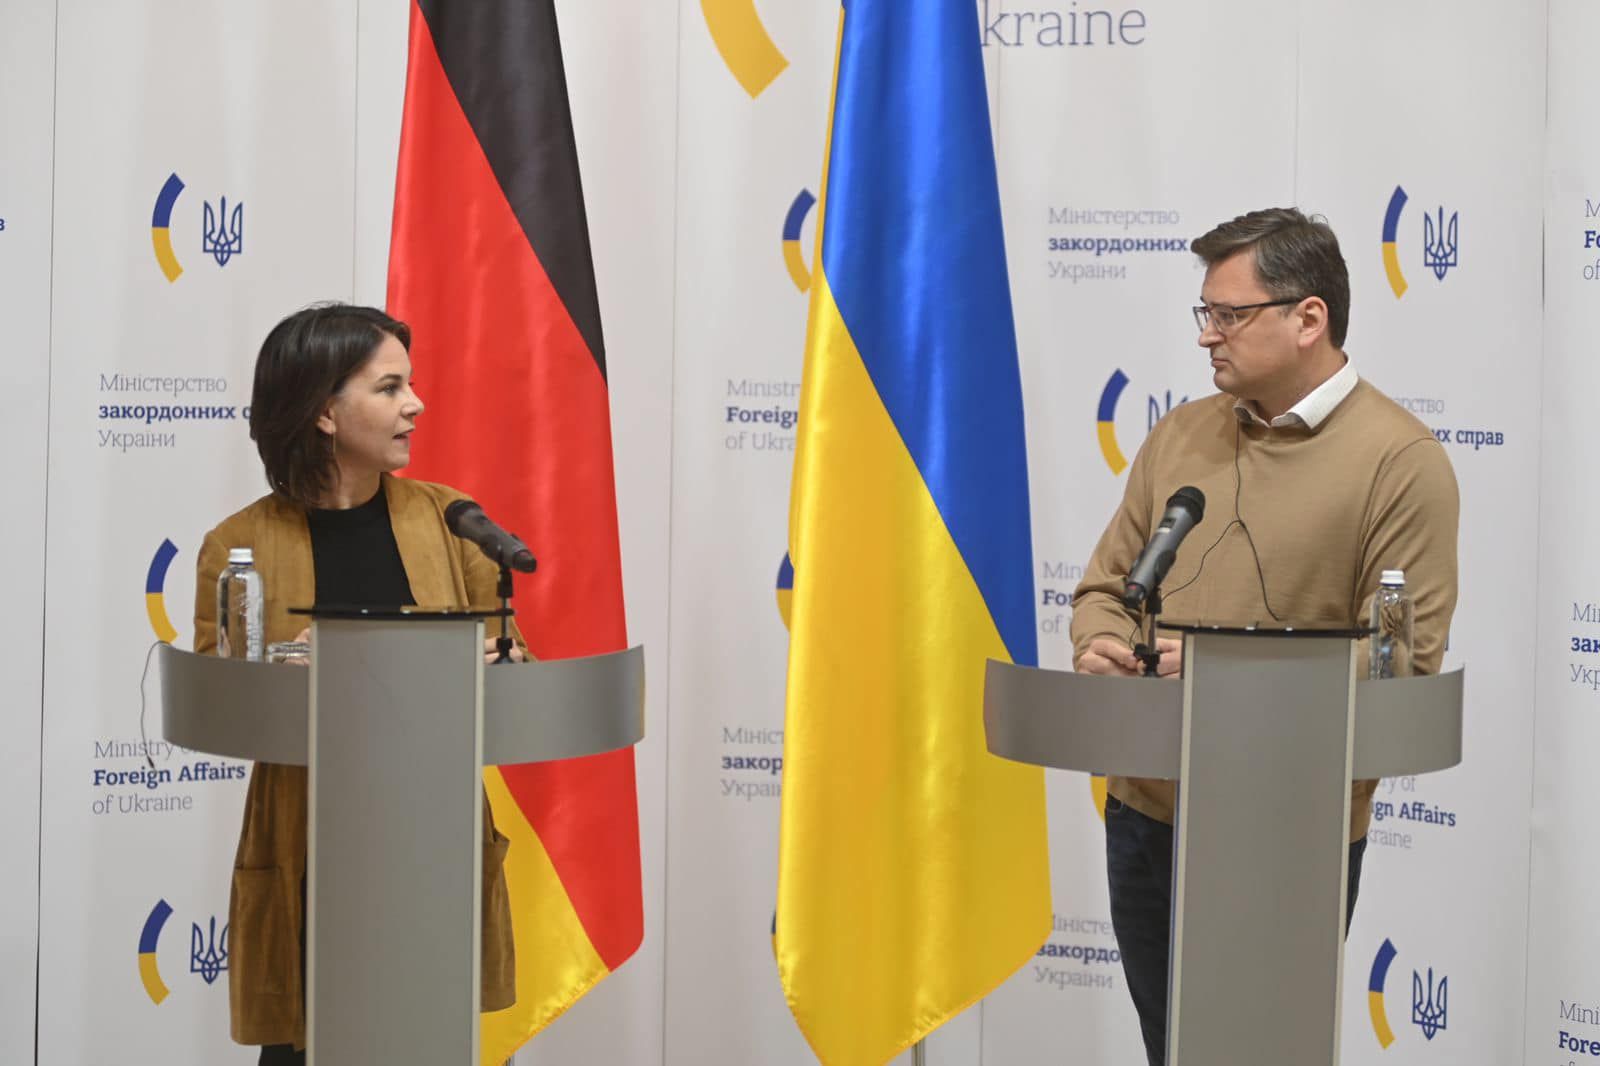 Німеччина наполягає на повному членстві України в ЄС - Анналена Бербок